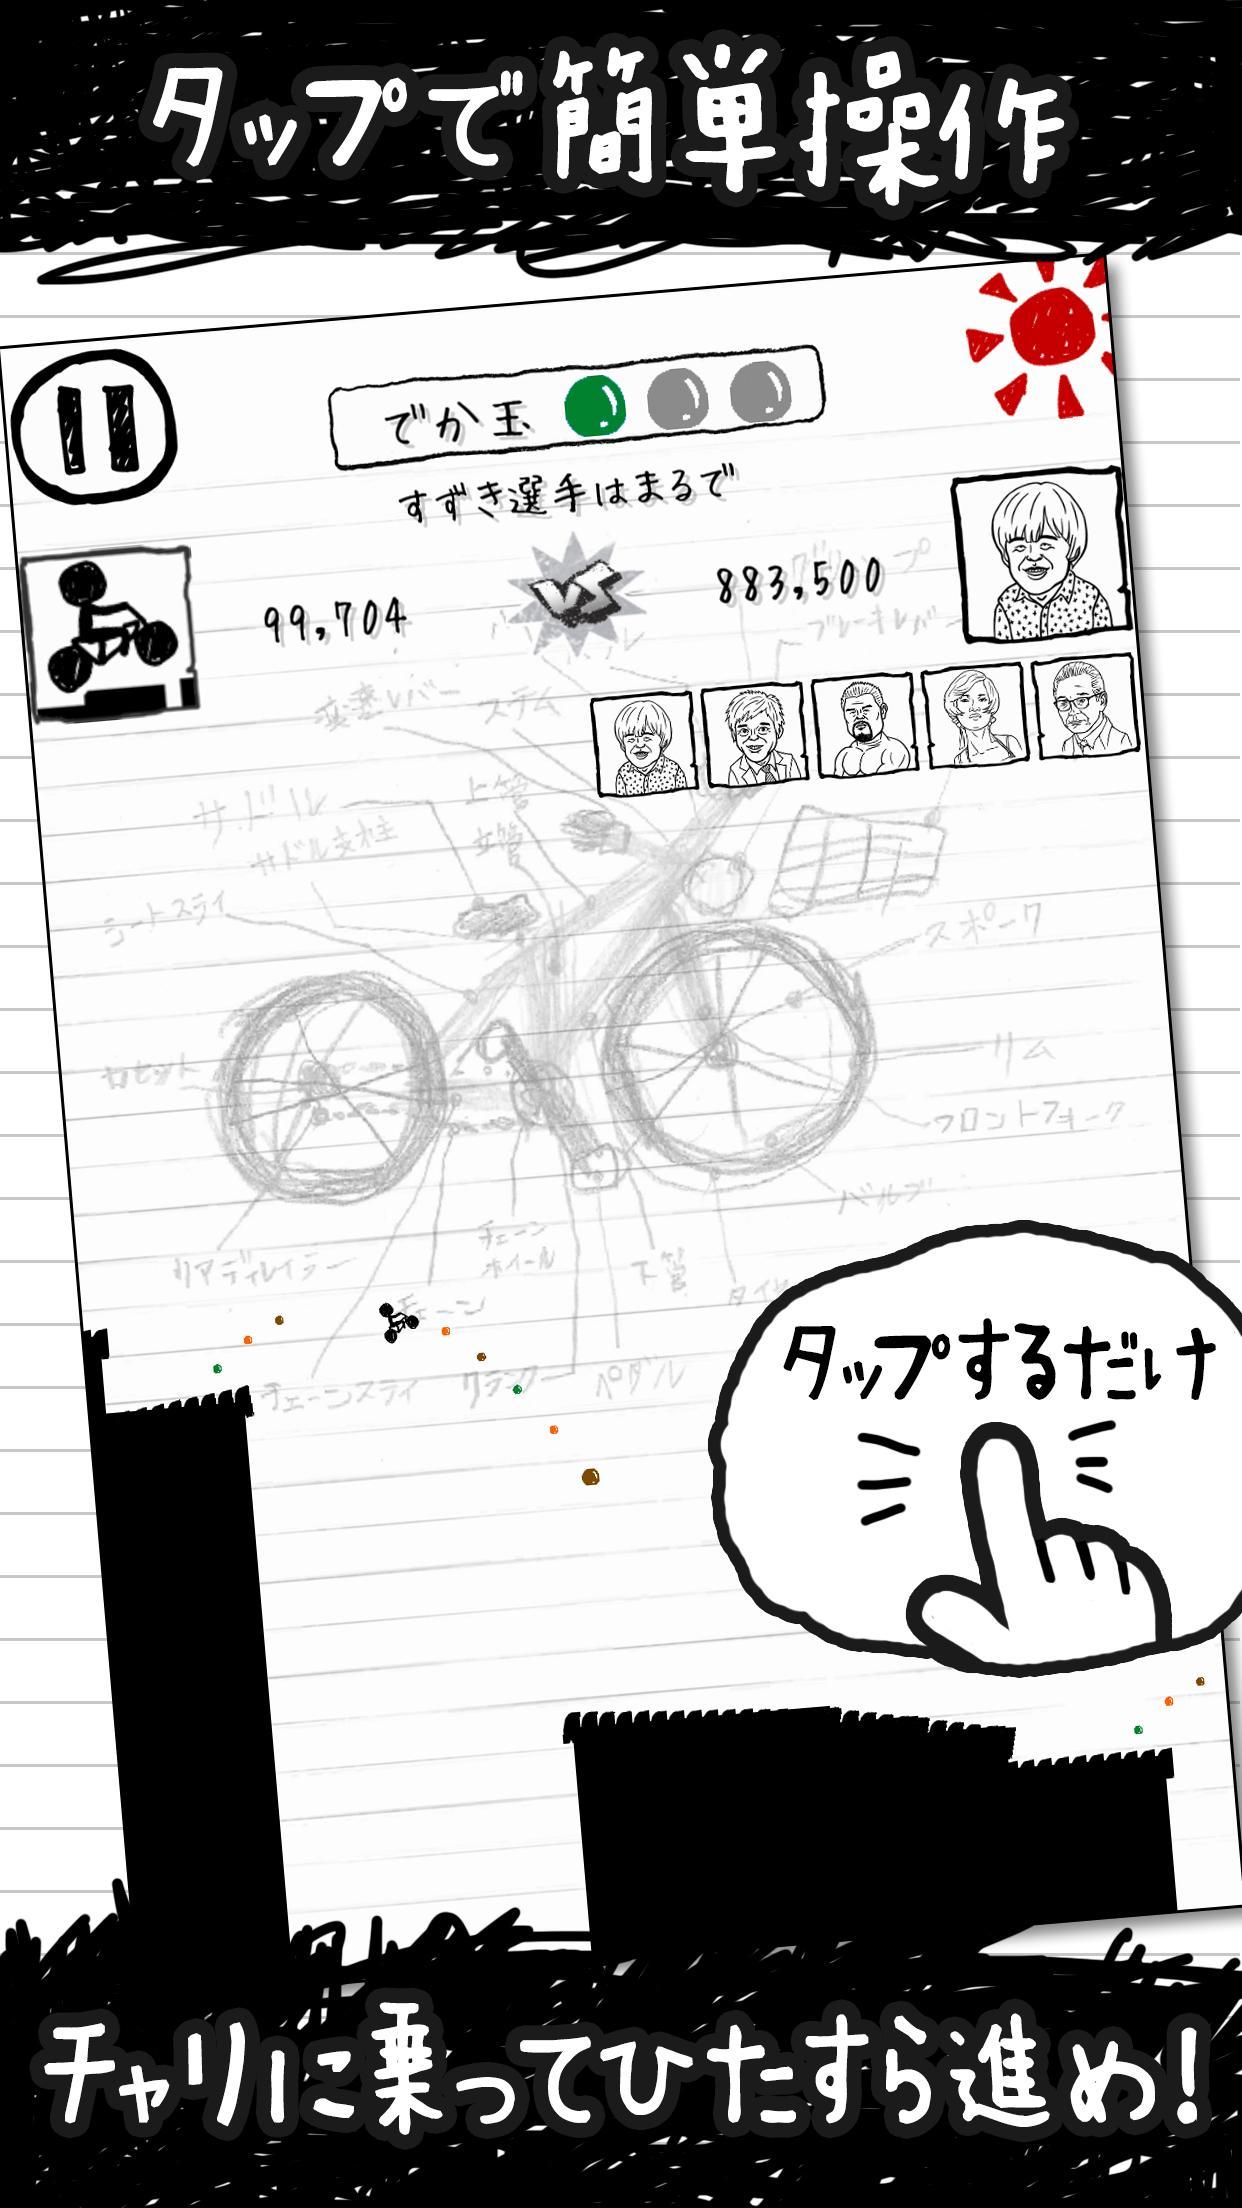 Screenshot 1 of การแข่งขันจักรยานไรเดอร์ ครั้งที่ 3 3.9.701